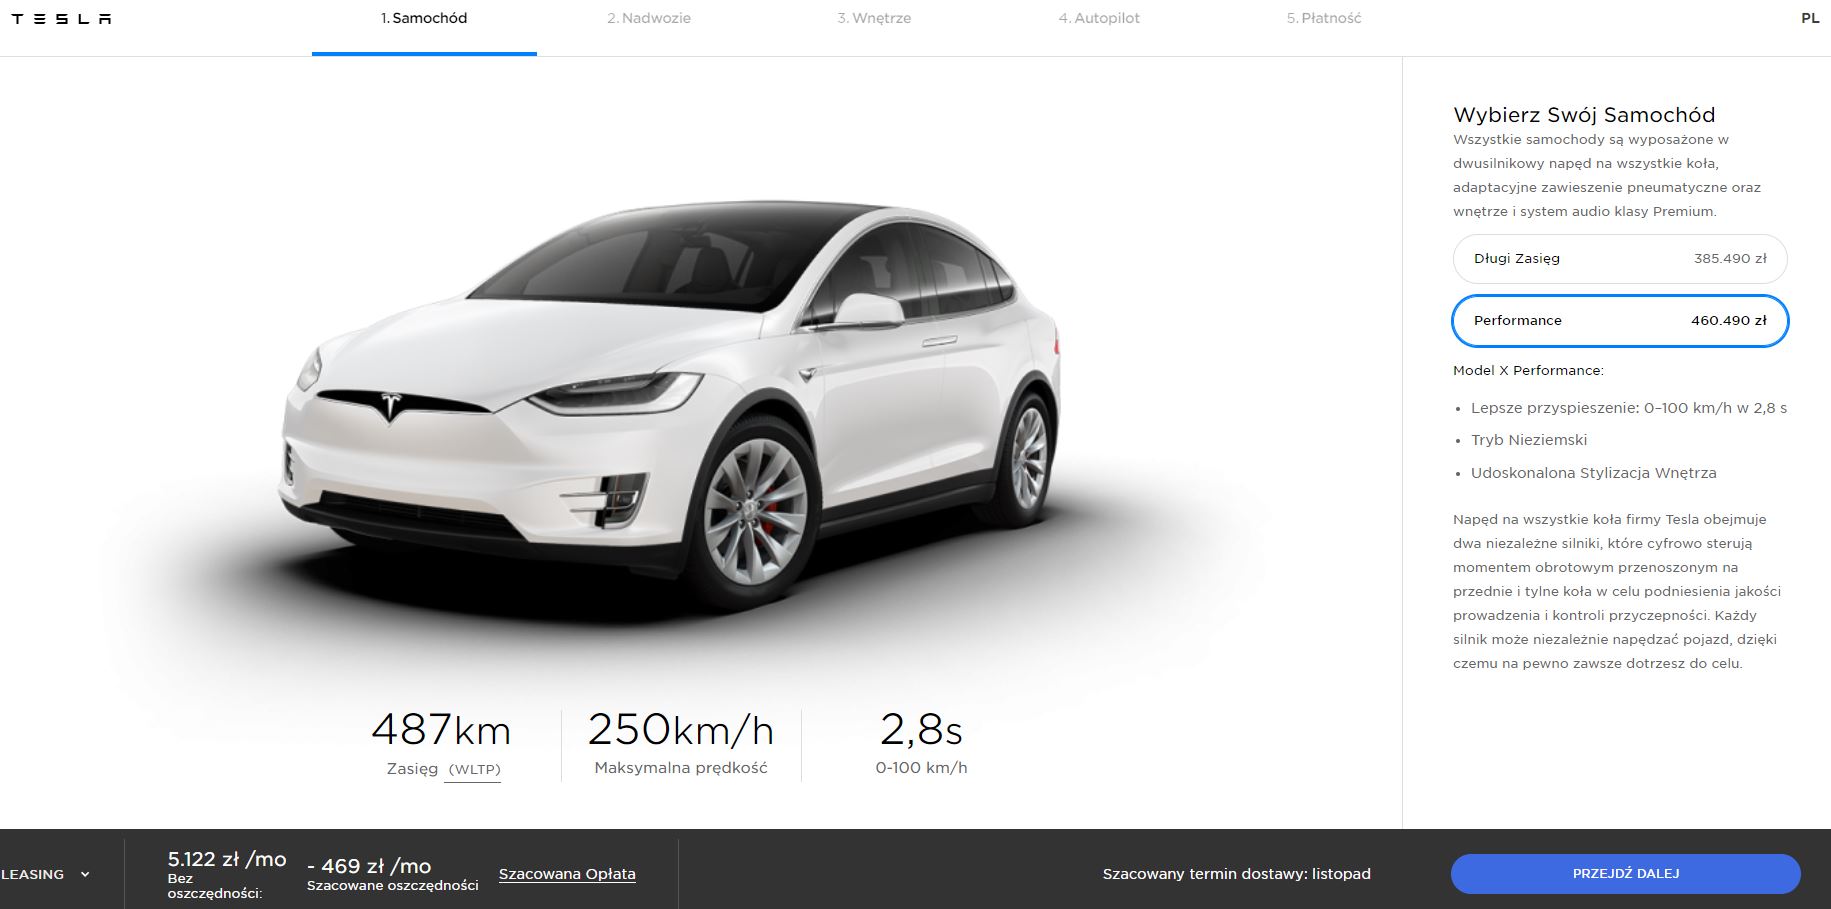 Tesla Model X polska cena